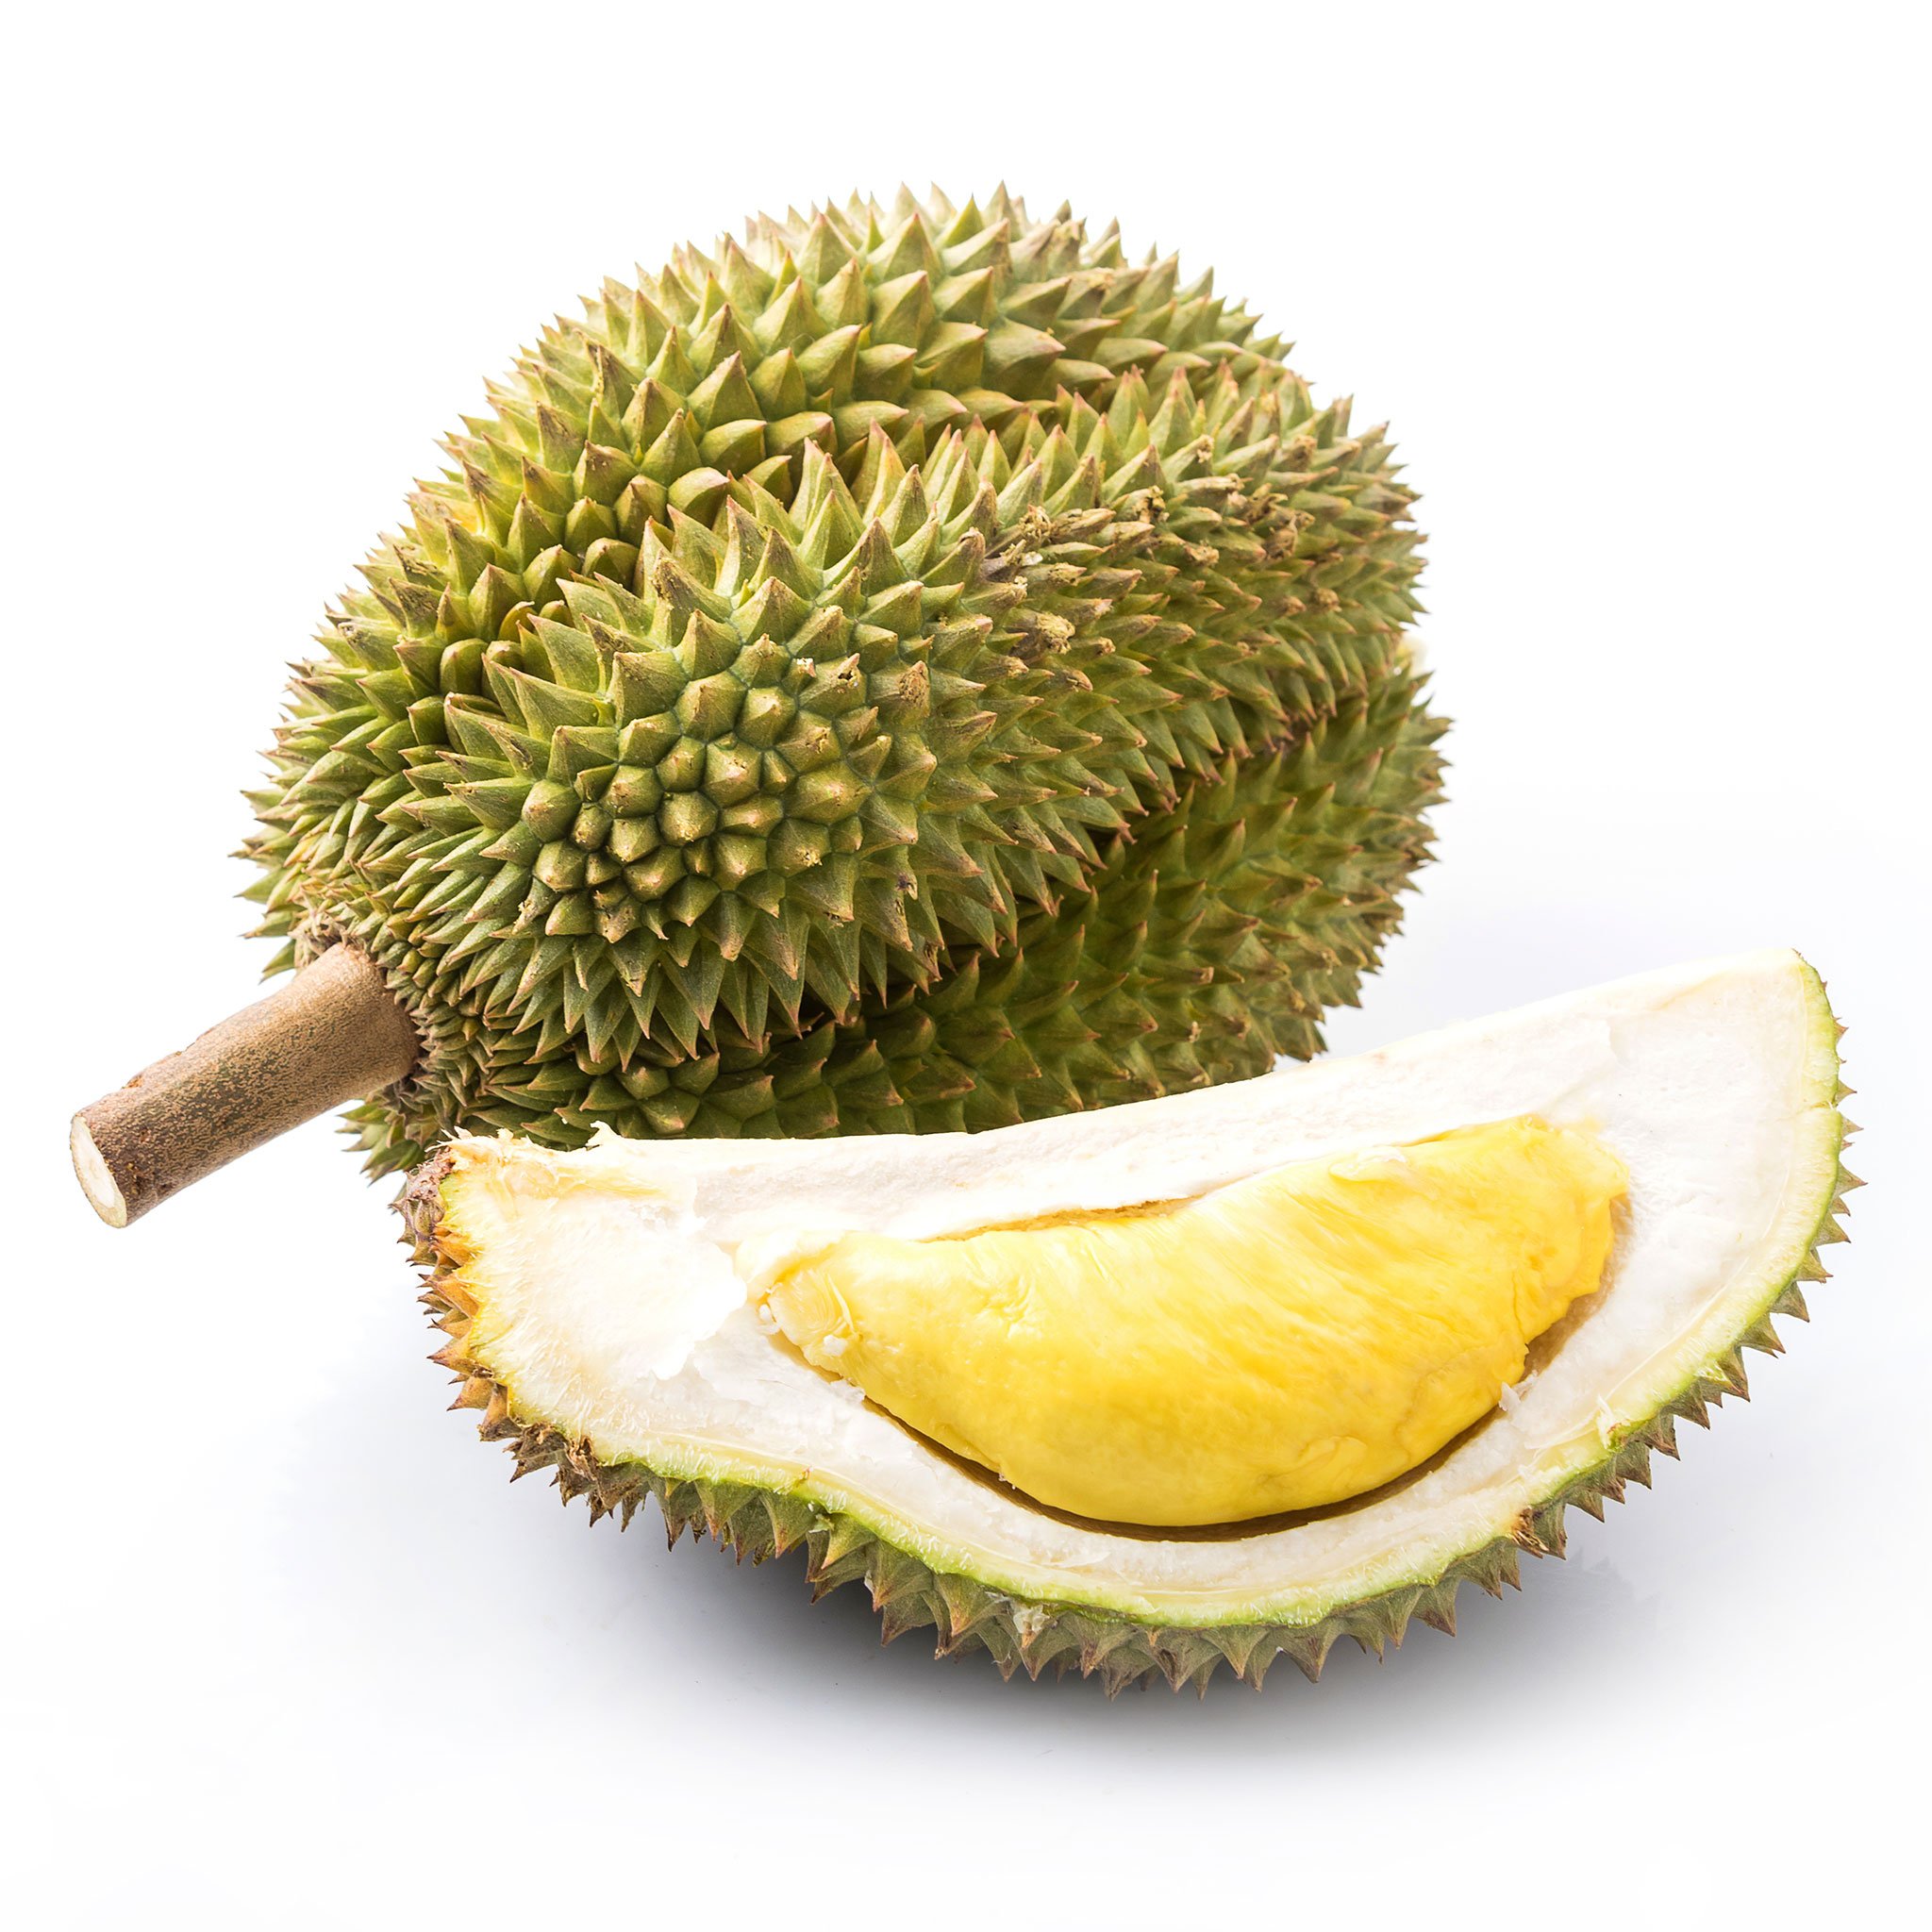 1 Stück frische Durian Frucht Stinkfrucht süß saftig sehr aromatisch ca. 3 kg